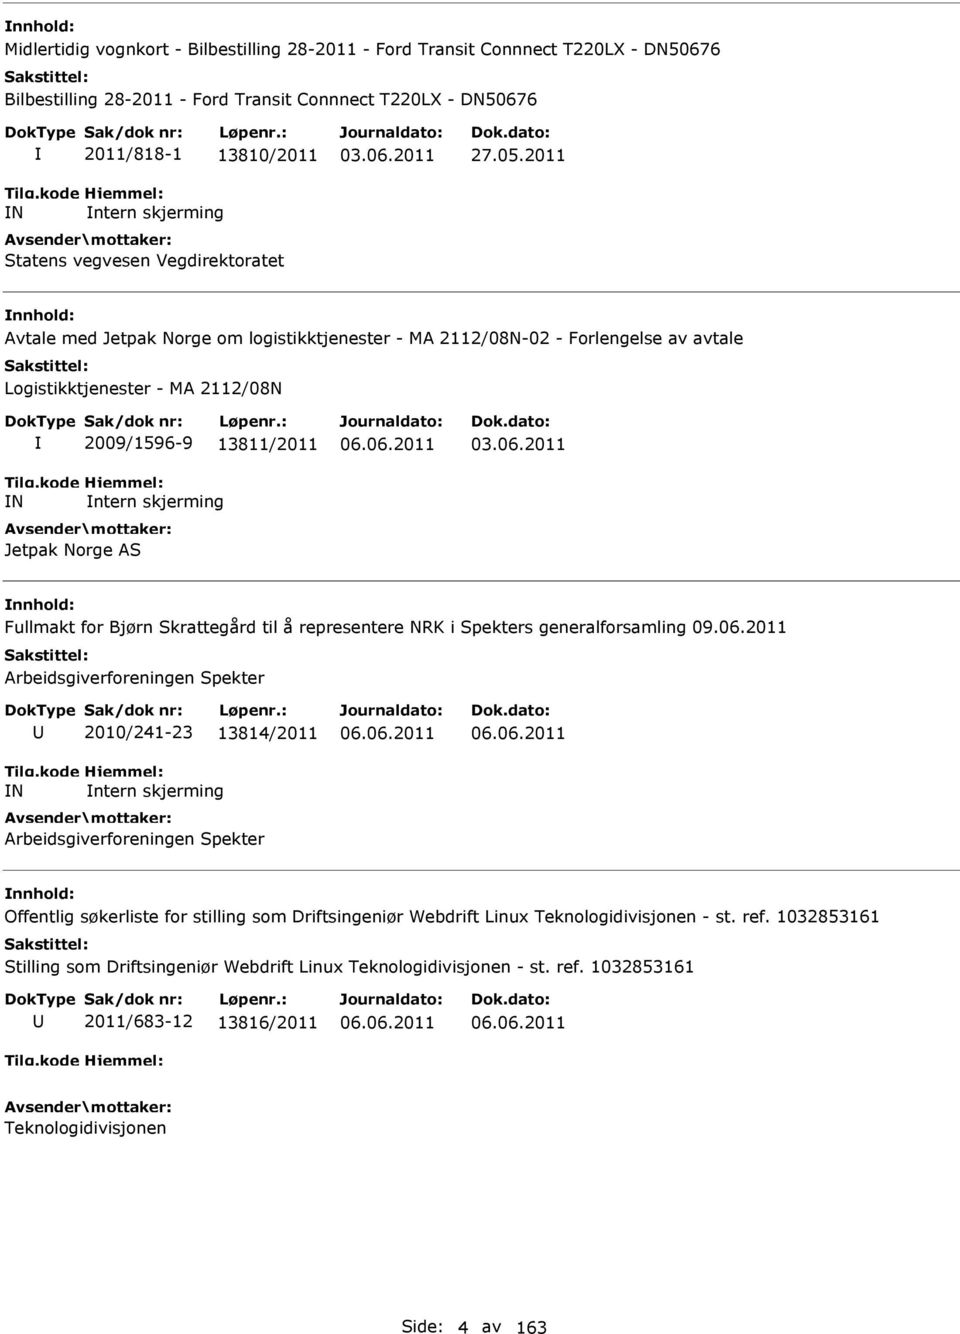 2011 Avtale med Jetpak Norge om logistikktjenester - MA 2112/08N-02 - Forlengelse av avtale Logistikktjenester - MA 2112/08N N 2009/1596-9 13811/2011 ntern skjerming Jetpak Norge AS 06.